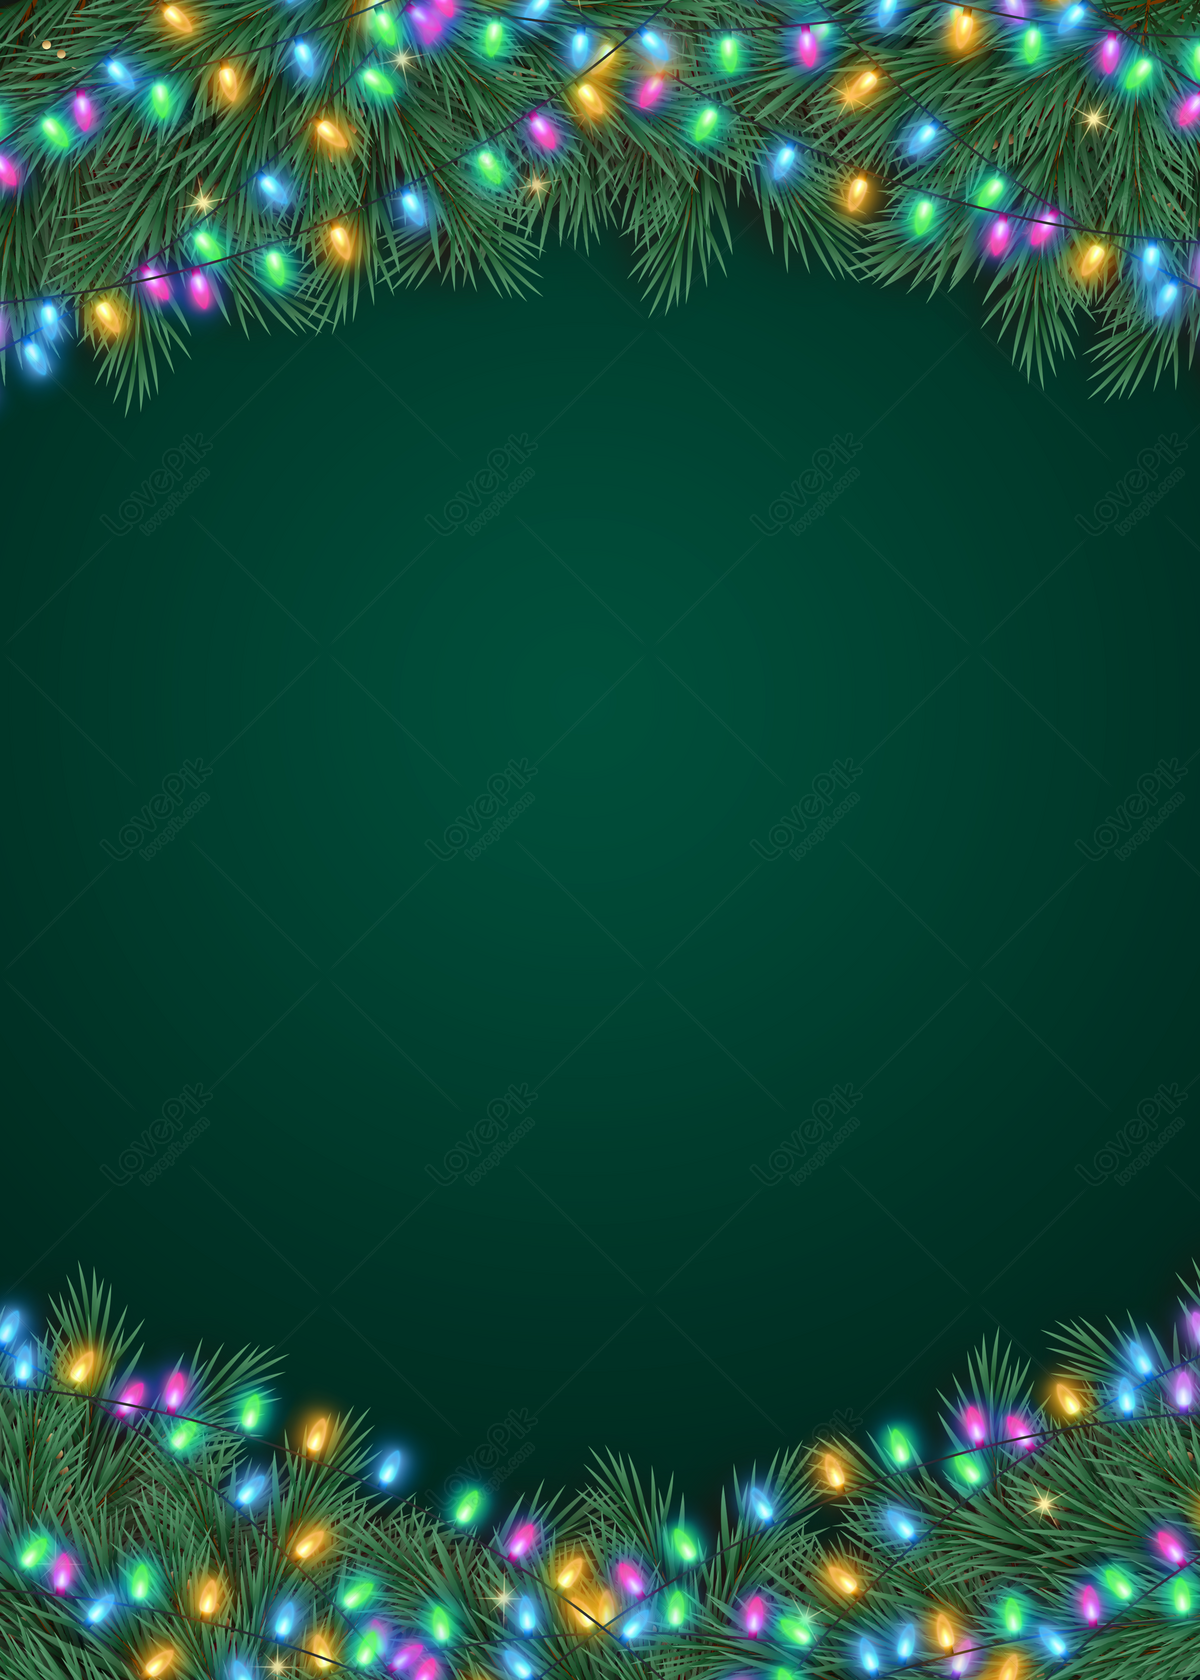 Đèn dây trang trí màu xanh Giáng Sinh là thứ không thể thiếu trong các trang trí Noel. Bức hình này cho bạn cảm giác ấm áp, có màu sắc trang trọng khi không khí lễ hội tách biệt giàu sức sống đang đến gần. Hãy để những đôm sáng đại diện cho sự vui vẻ và hạnh phúc tràn đầy trong ngày Giáng Sinh.